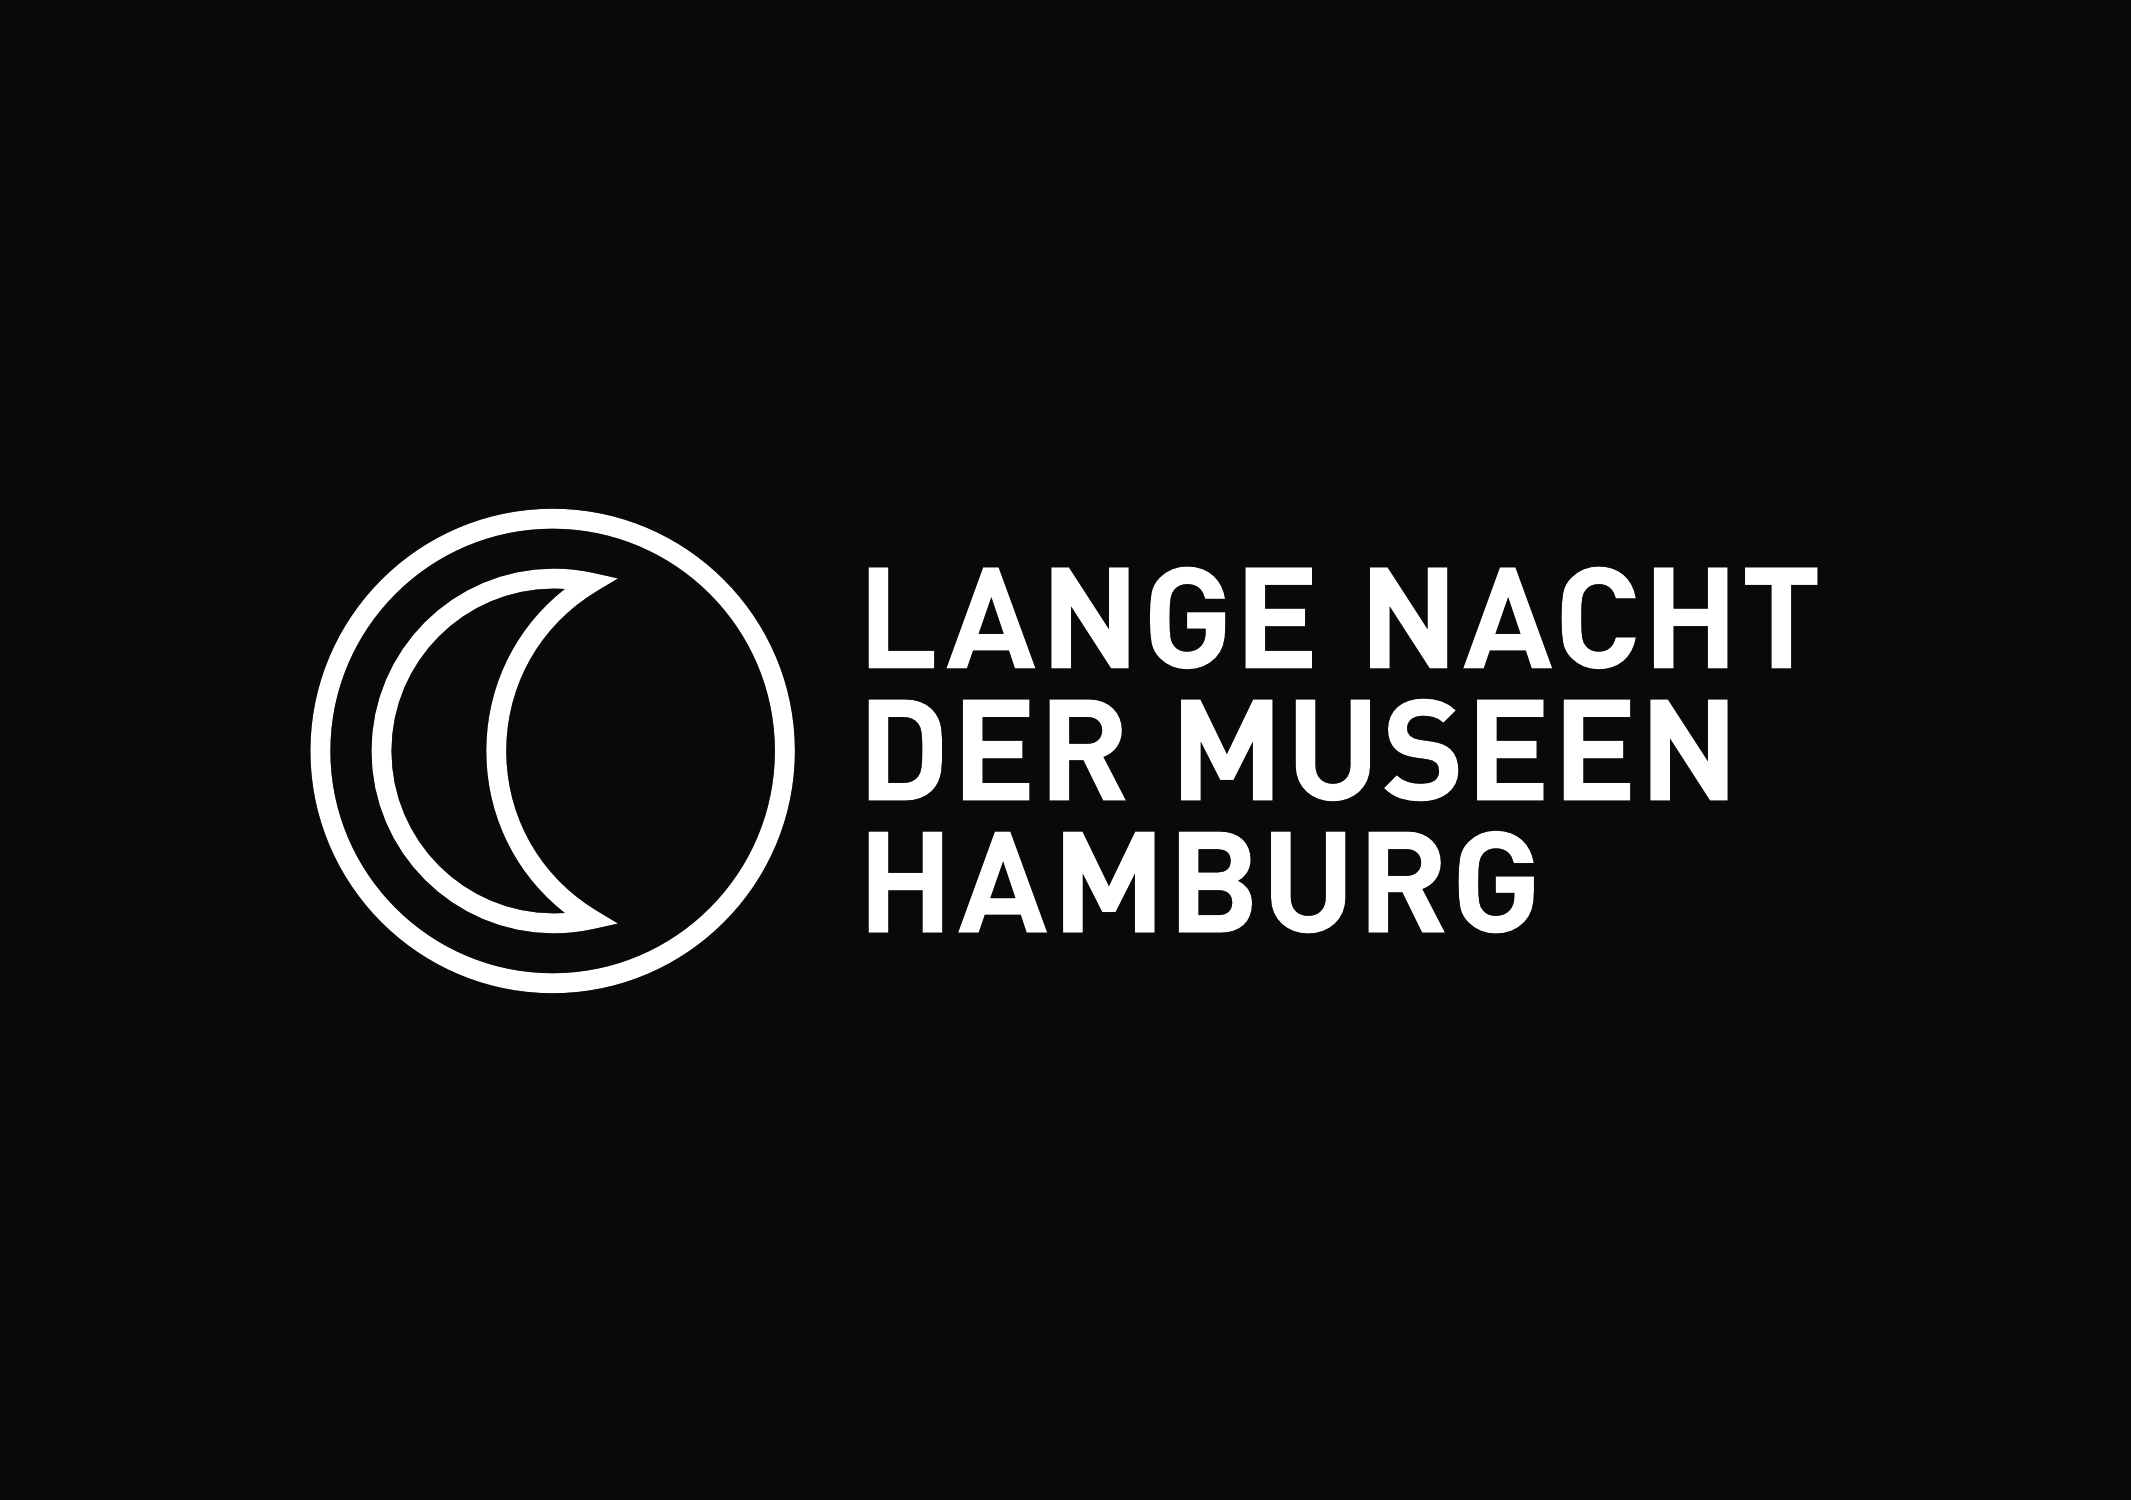 Das Logo der Langen Nacht der Museen 2019